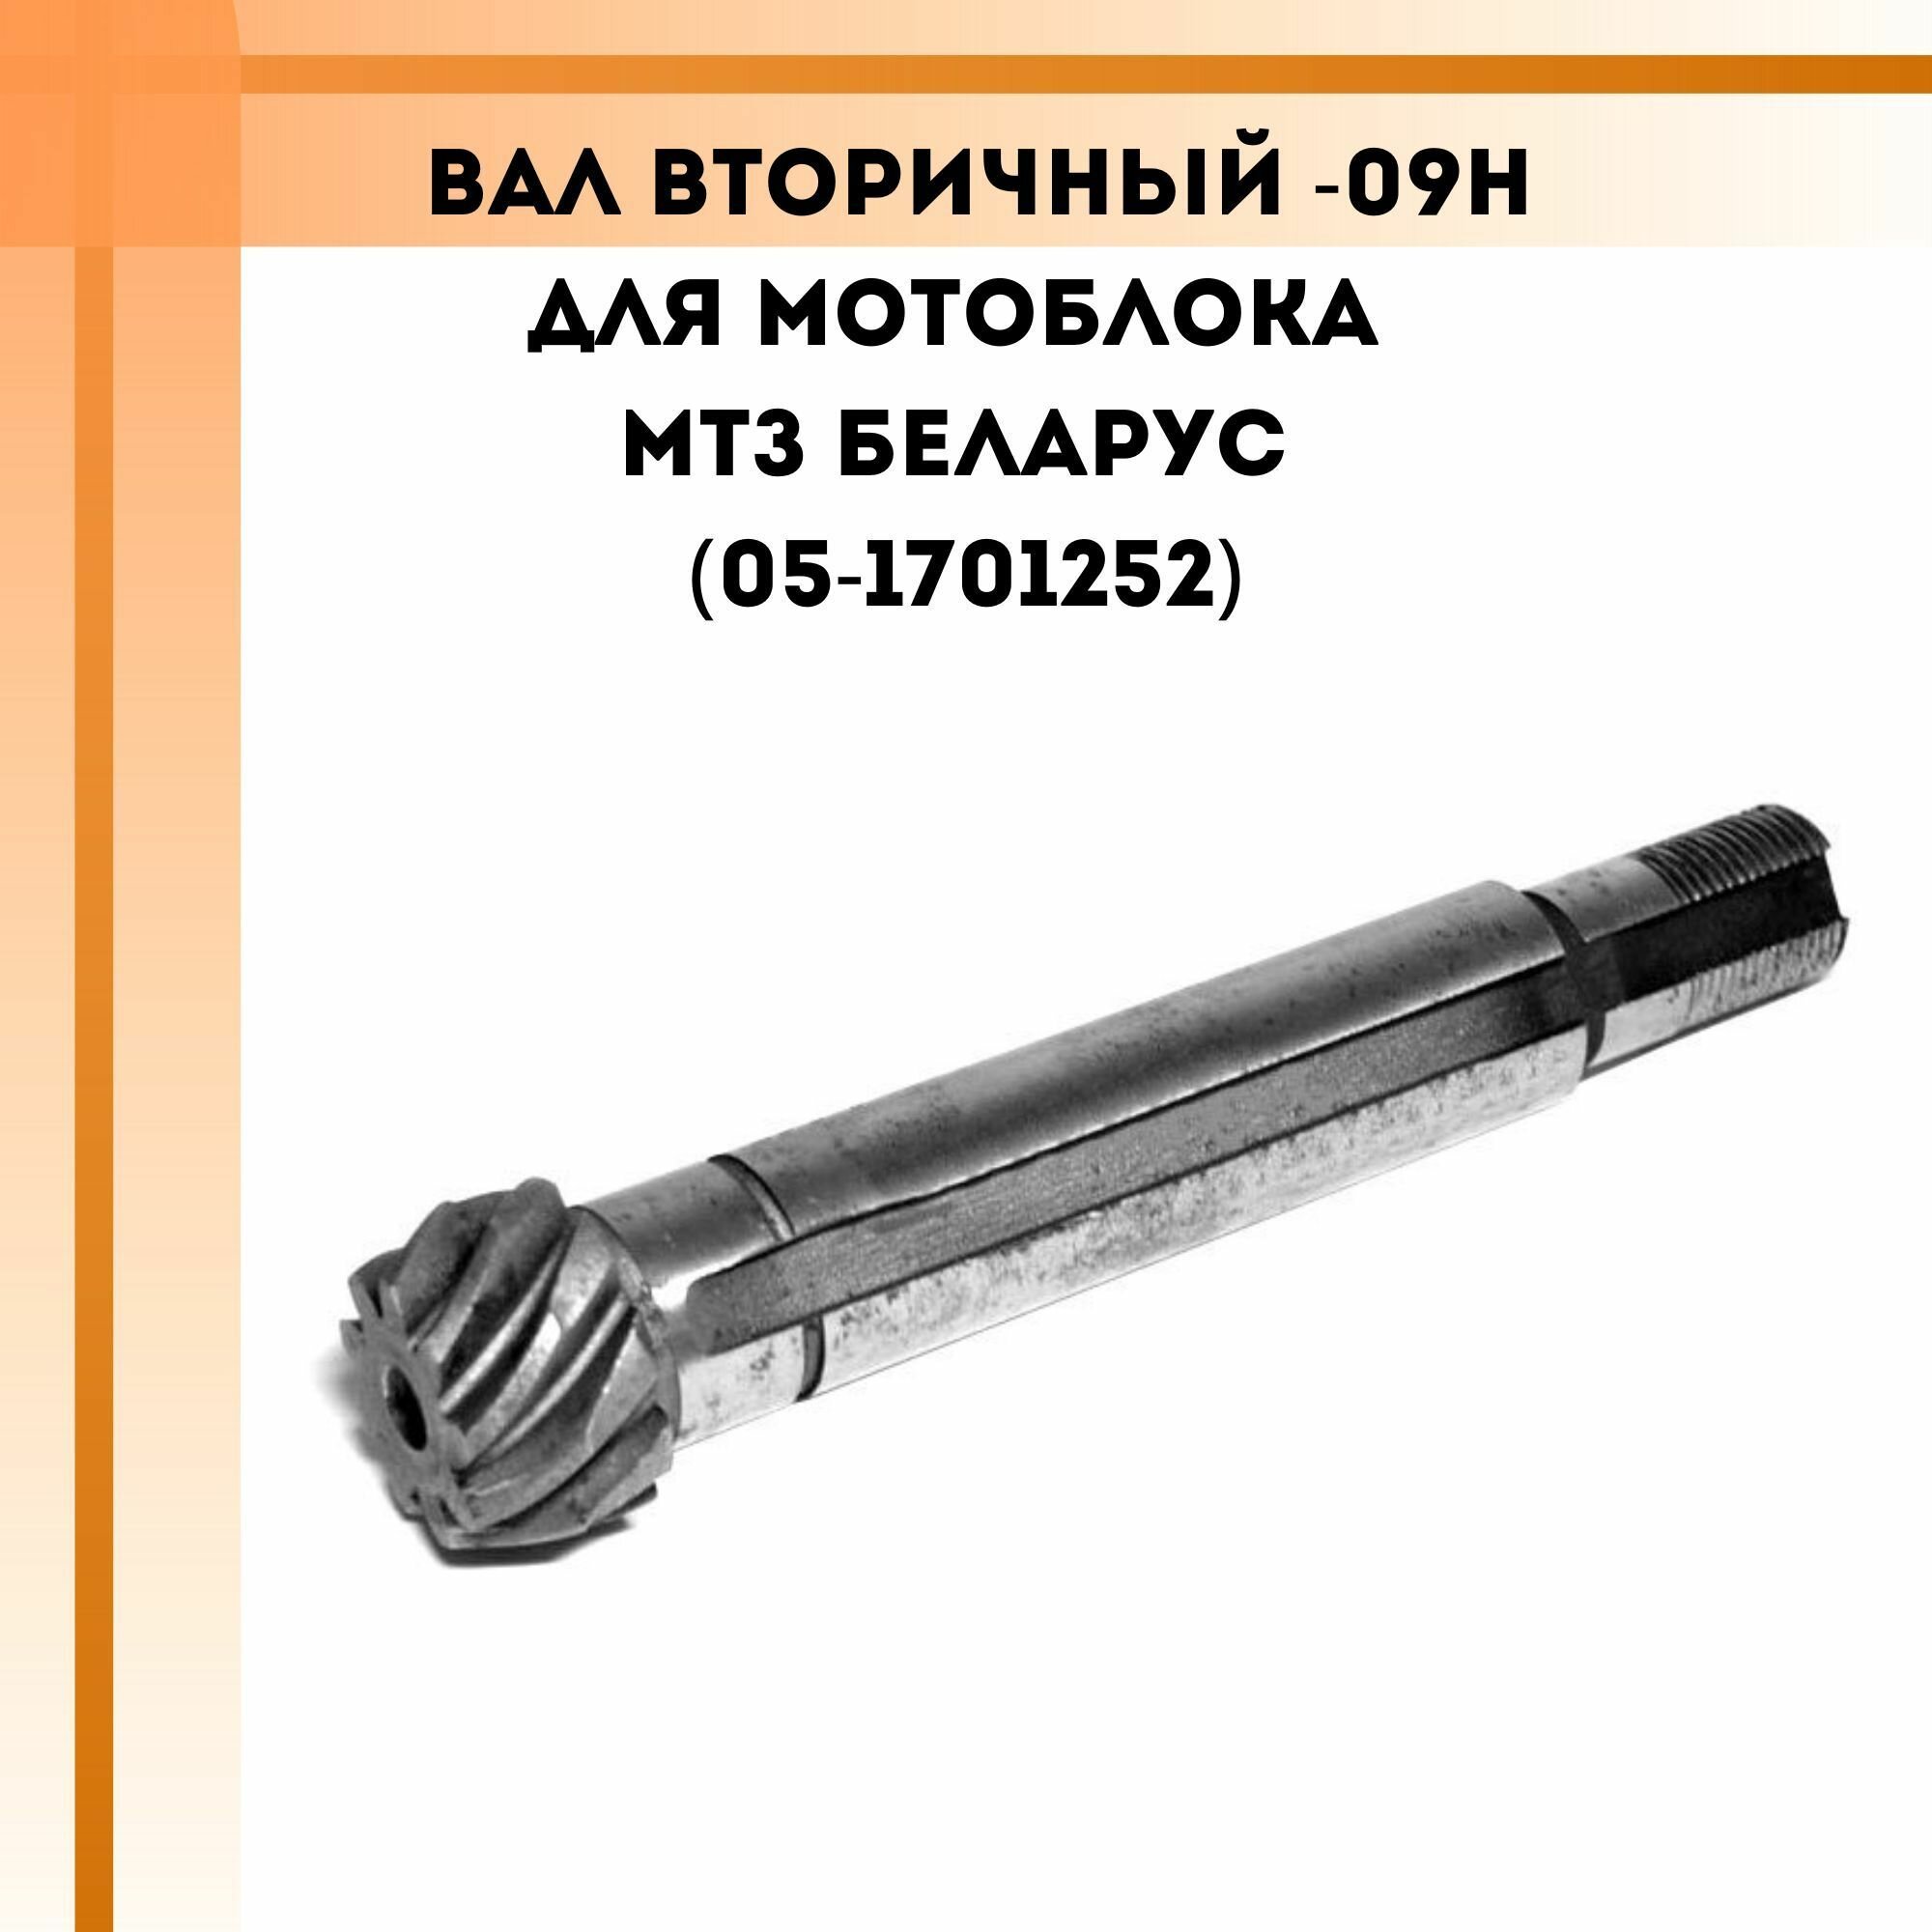 Вал вторичный -09Н для мотоблока МТЗ Беларус (05-1701252)